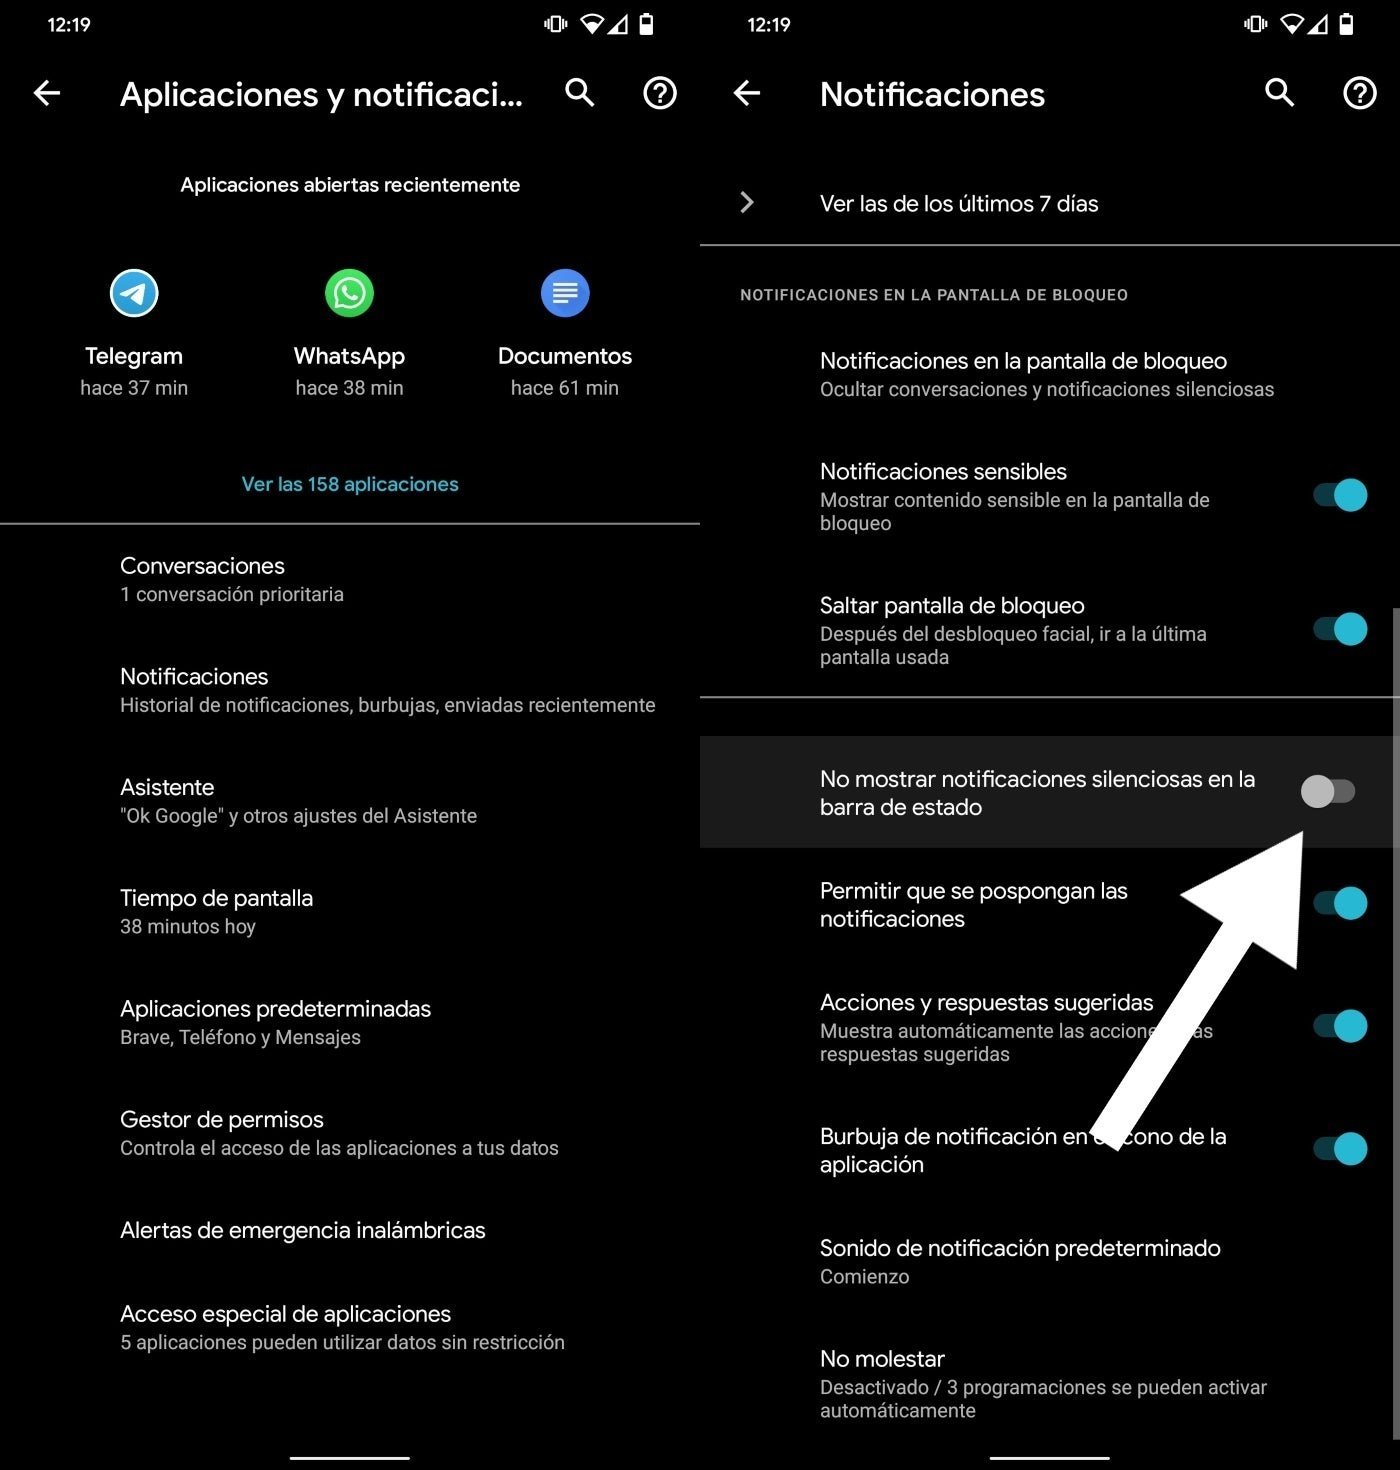 Ocultar notificaciones silenciosas en Android